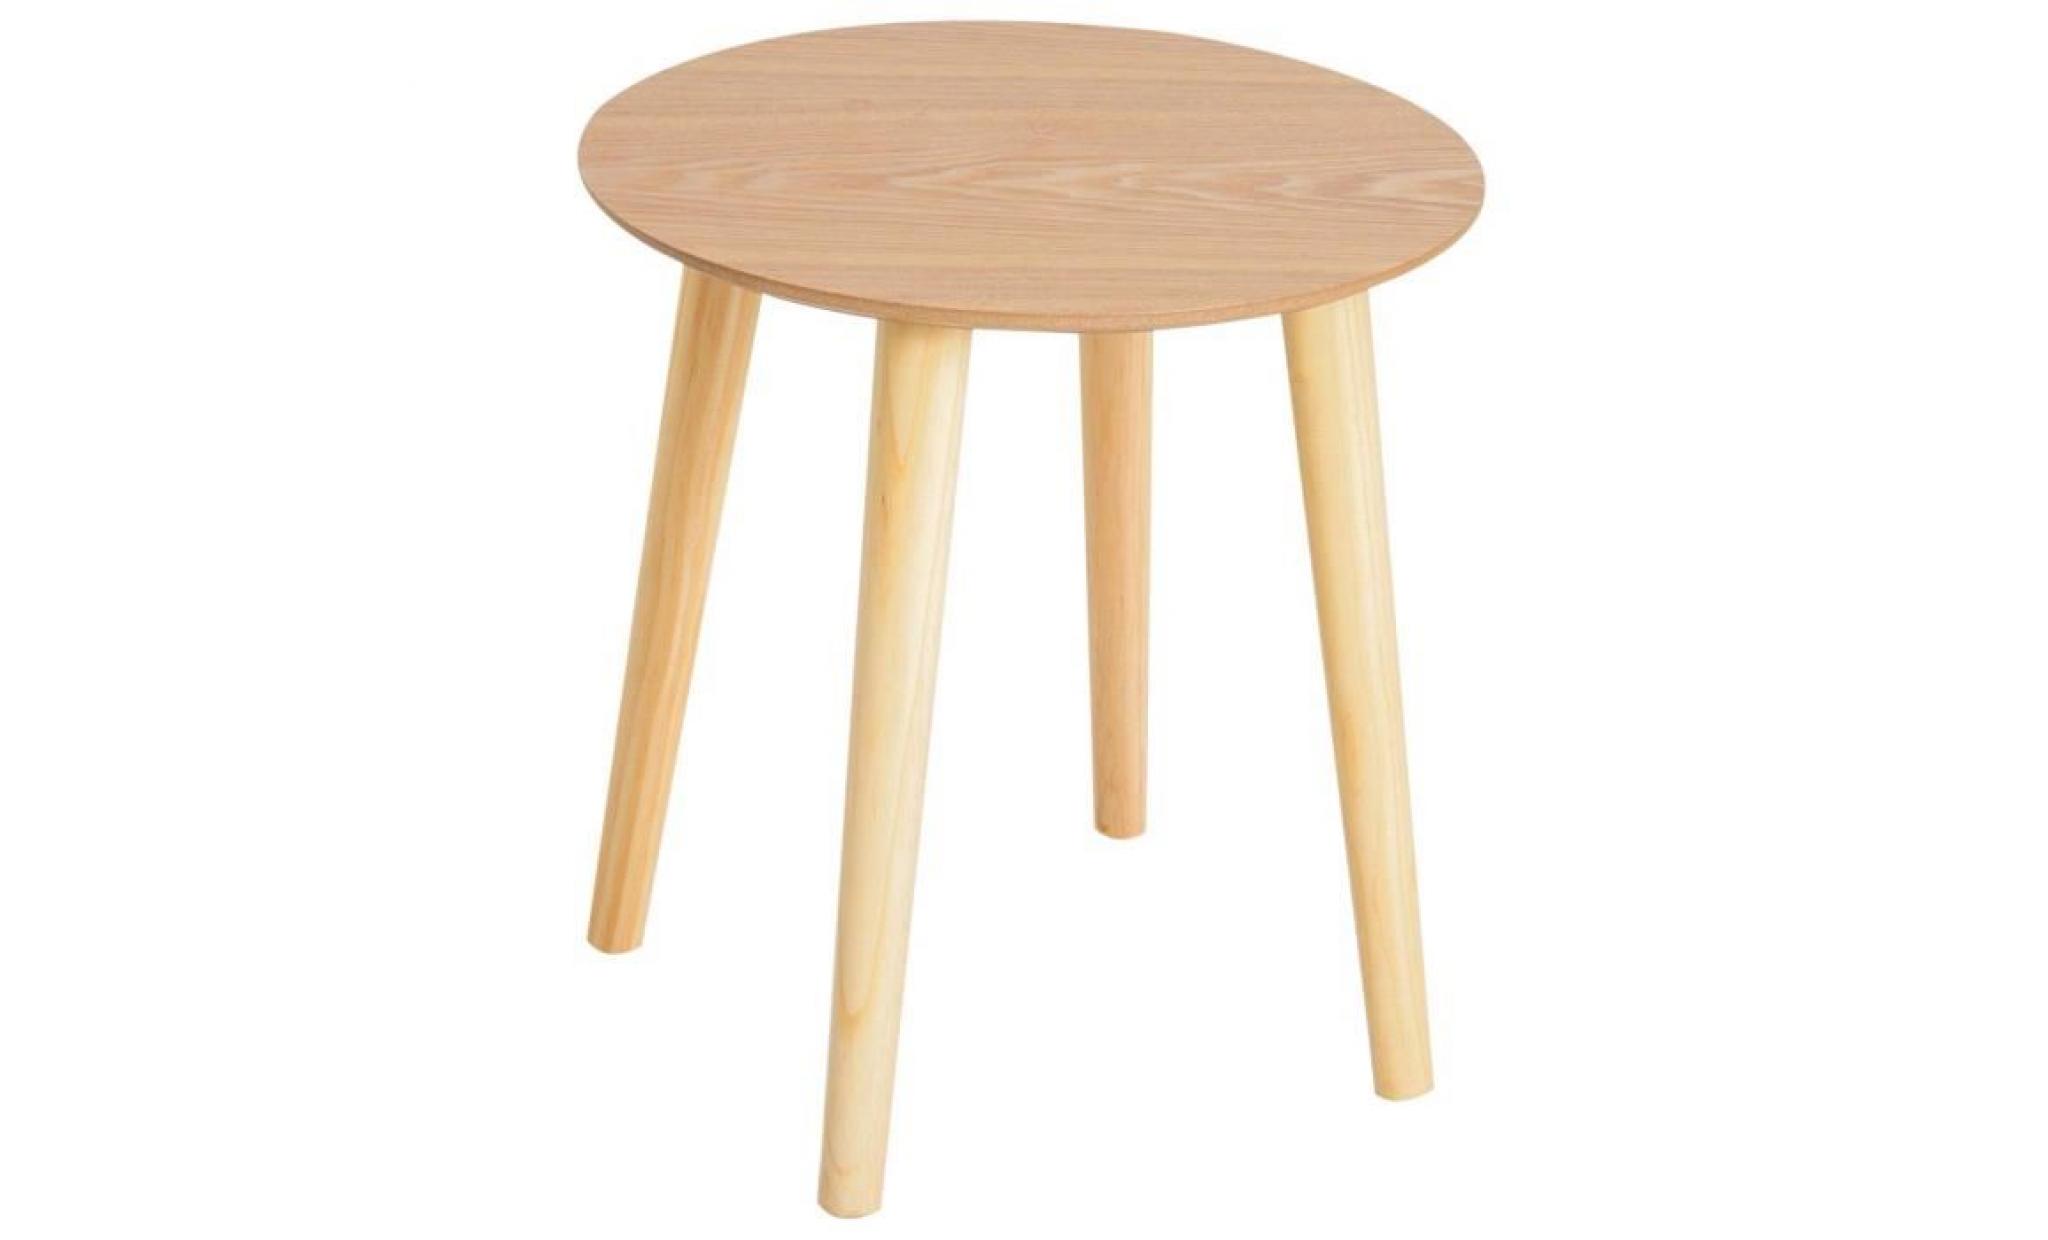 table basse ronde design scandinave Ø 59 x 50h cm bois massif pin mdf coloris bois de hêtre 59x59x50cm beige